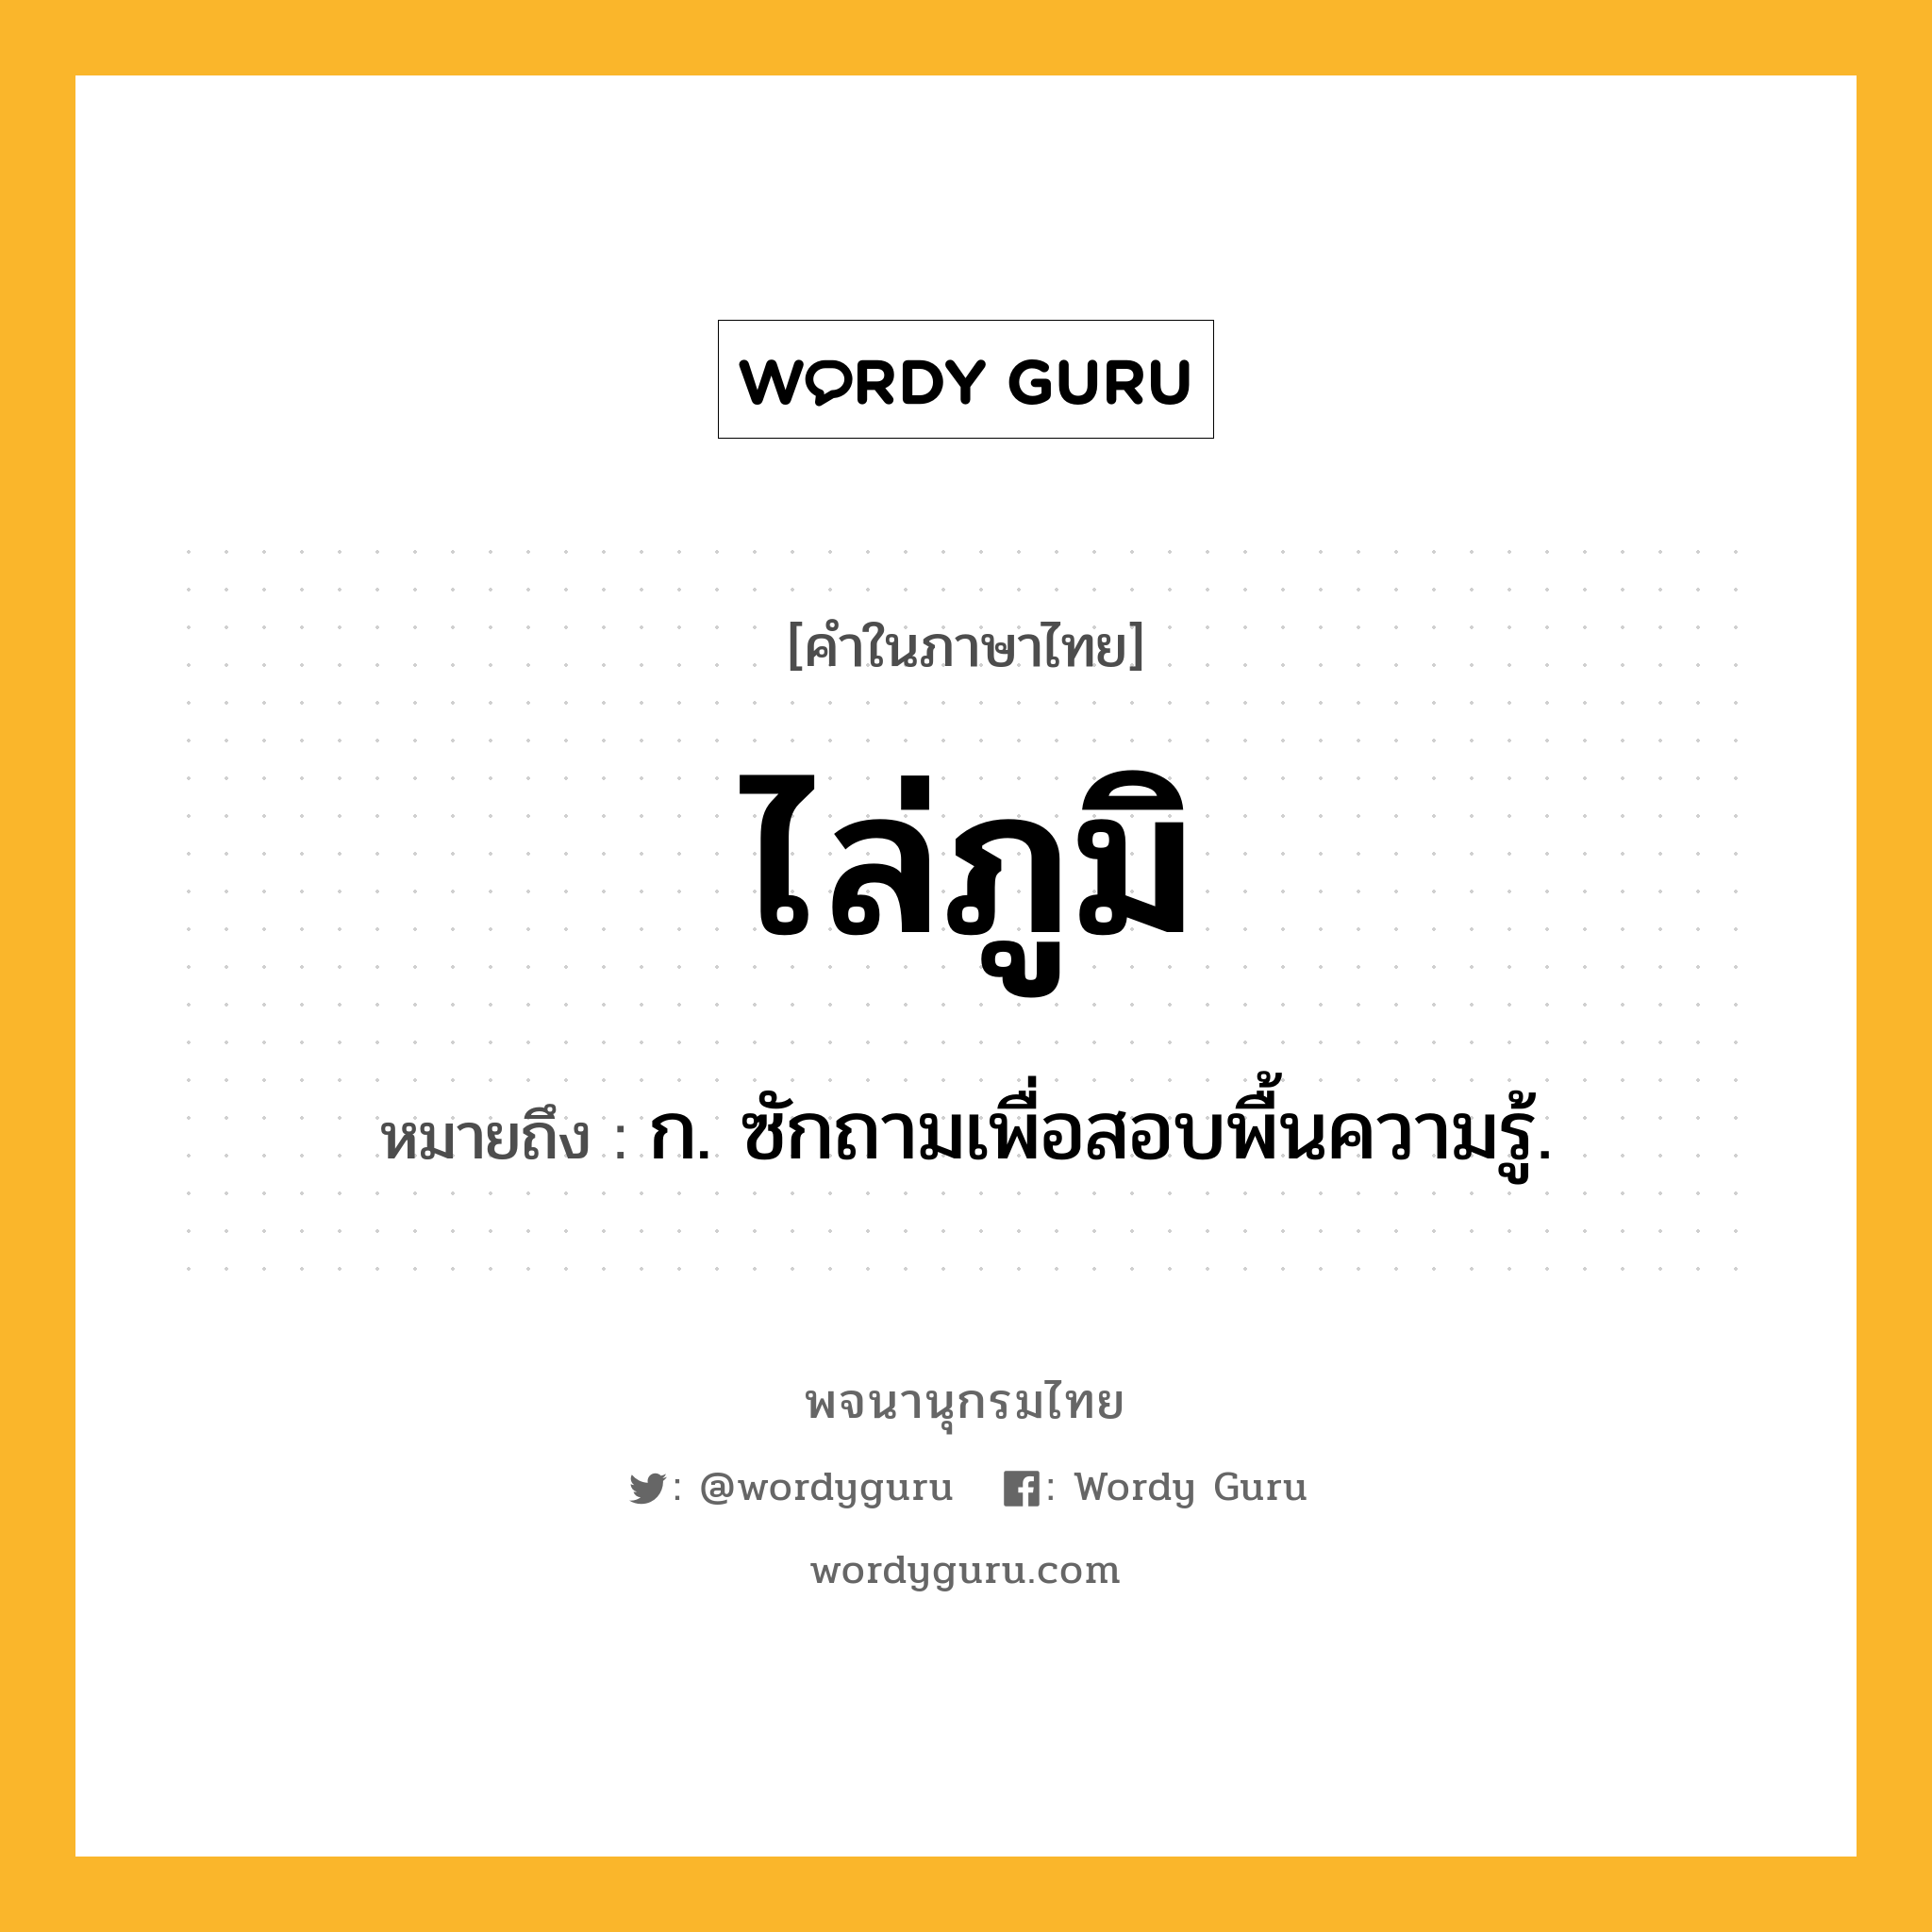 ไล่ภูมิ ความหมาย หมายถึงอะไร?, คำในภาษาไทย ไล่ภูมิ หมายถึง ก. ซักถามเพื่อสอบพื้นความรู้.